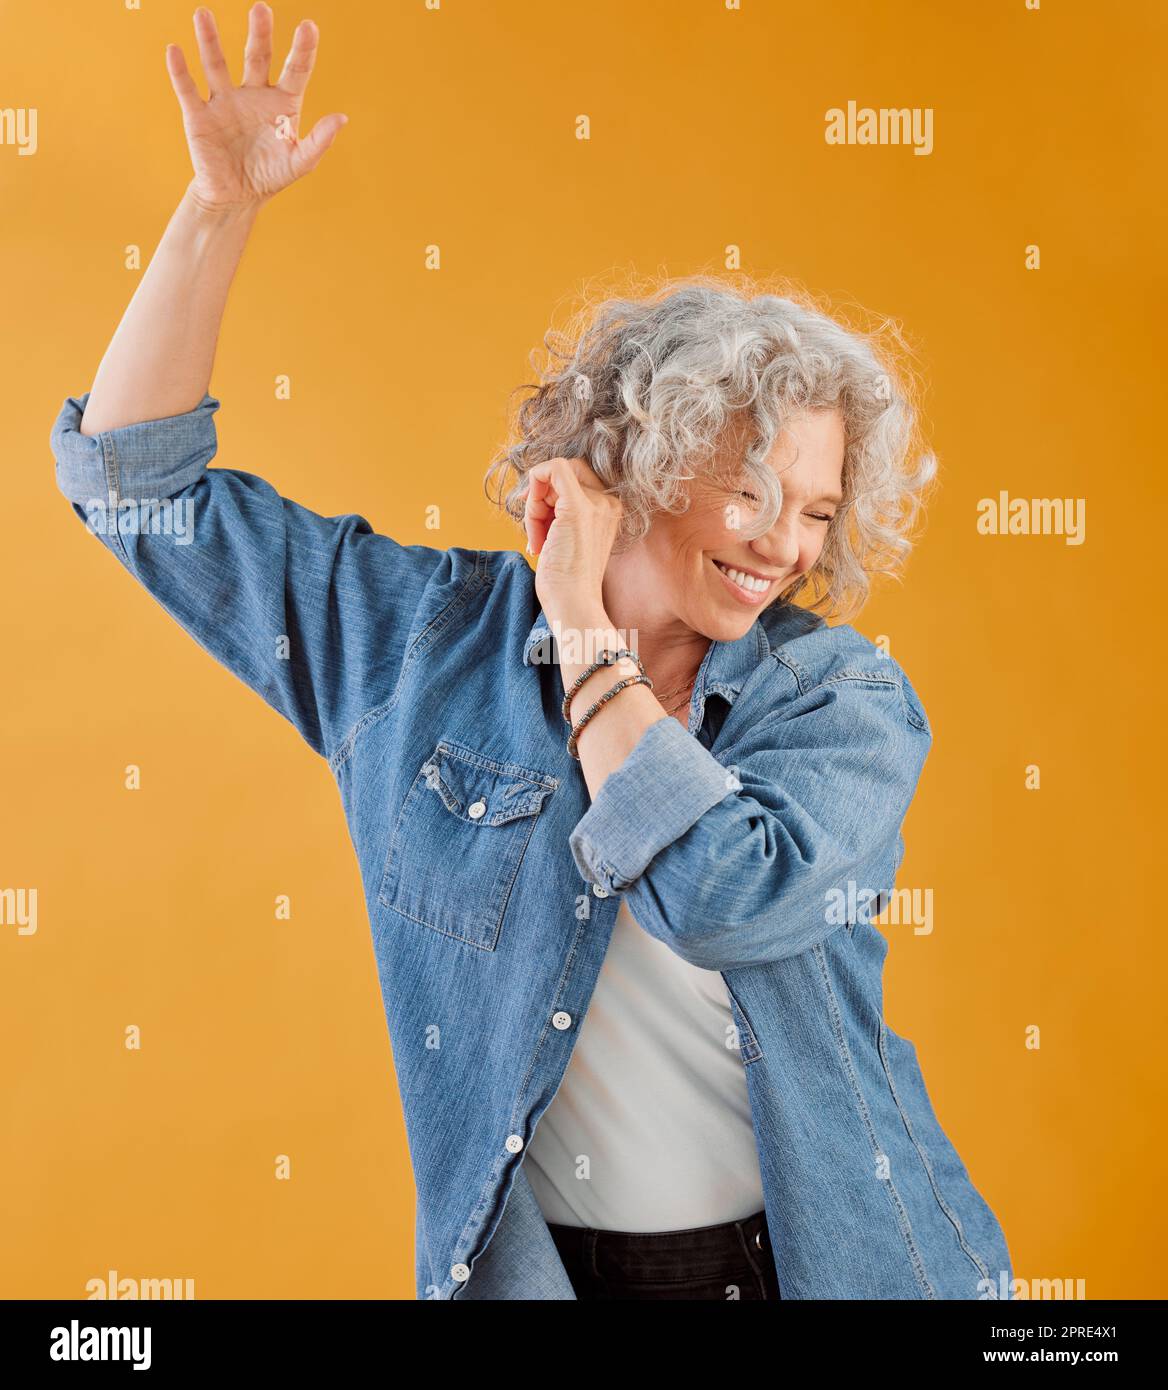 Feier, Feier und Tanz reife Frau, glückliche und fröhliche Senior, winkende Hand-Geste und Lächeln. Ältere weiße Frau, die Spaß hat, während sie vor orangefarbenem Hintergrund tanzt Stockfoto